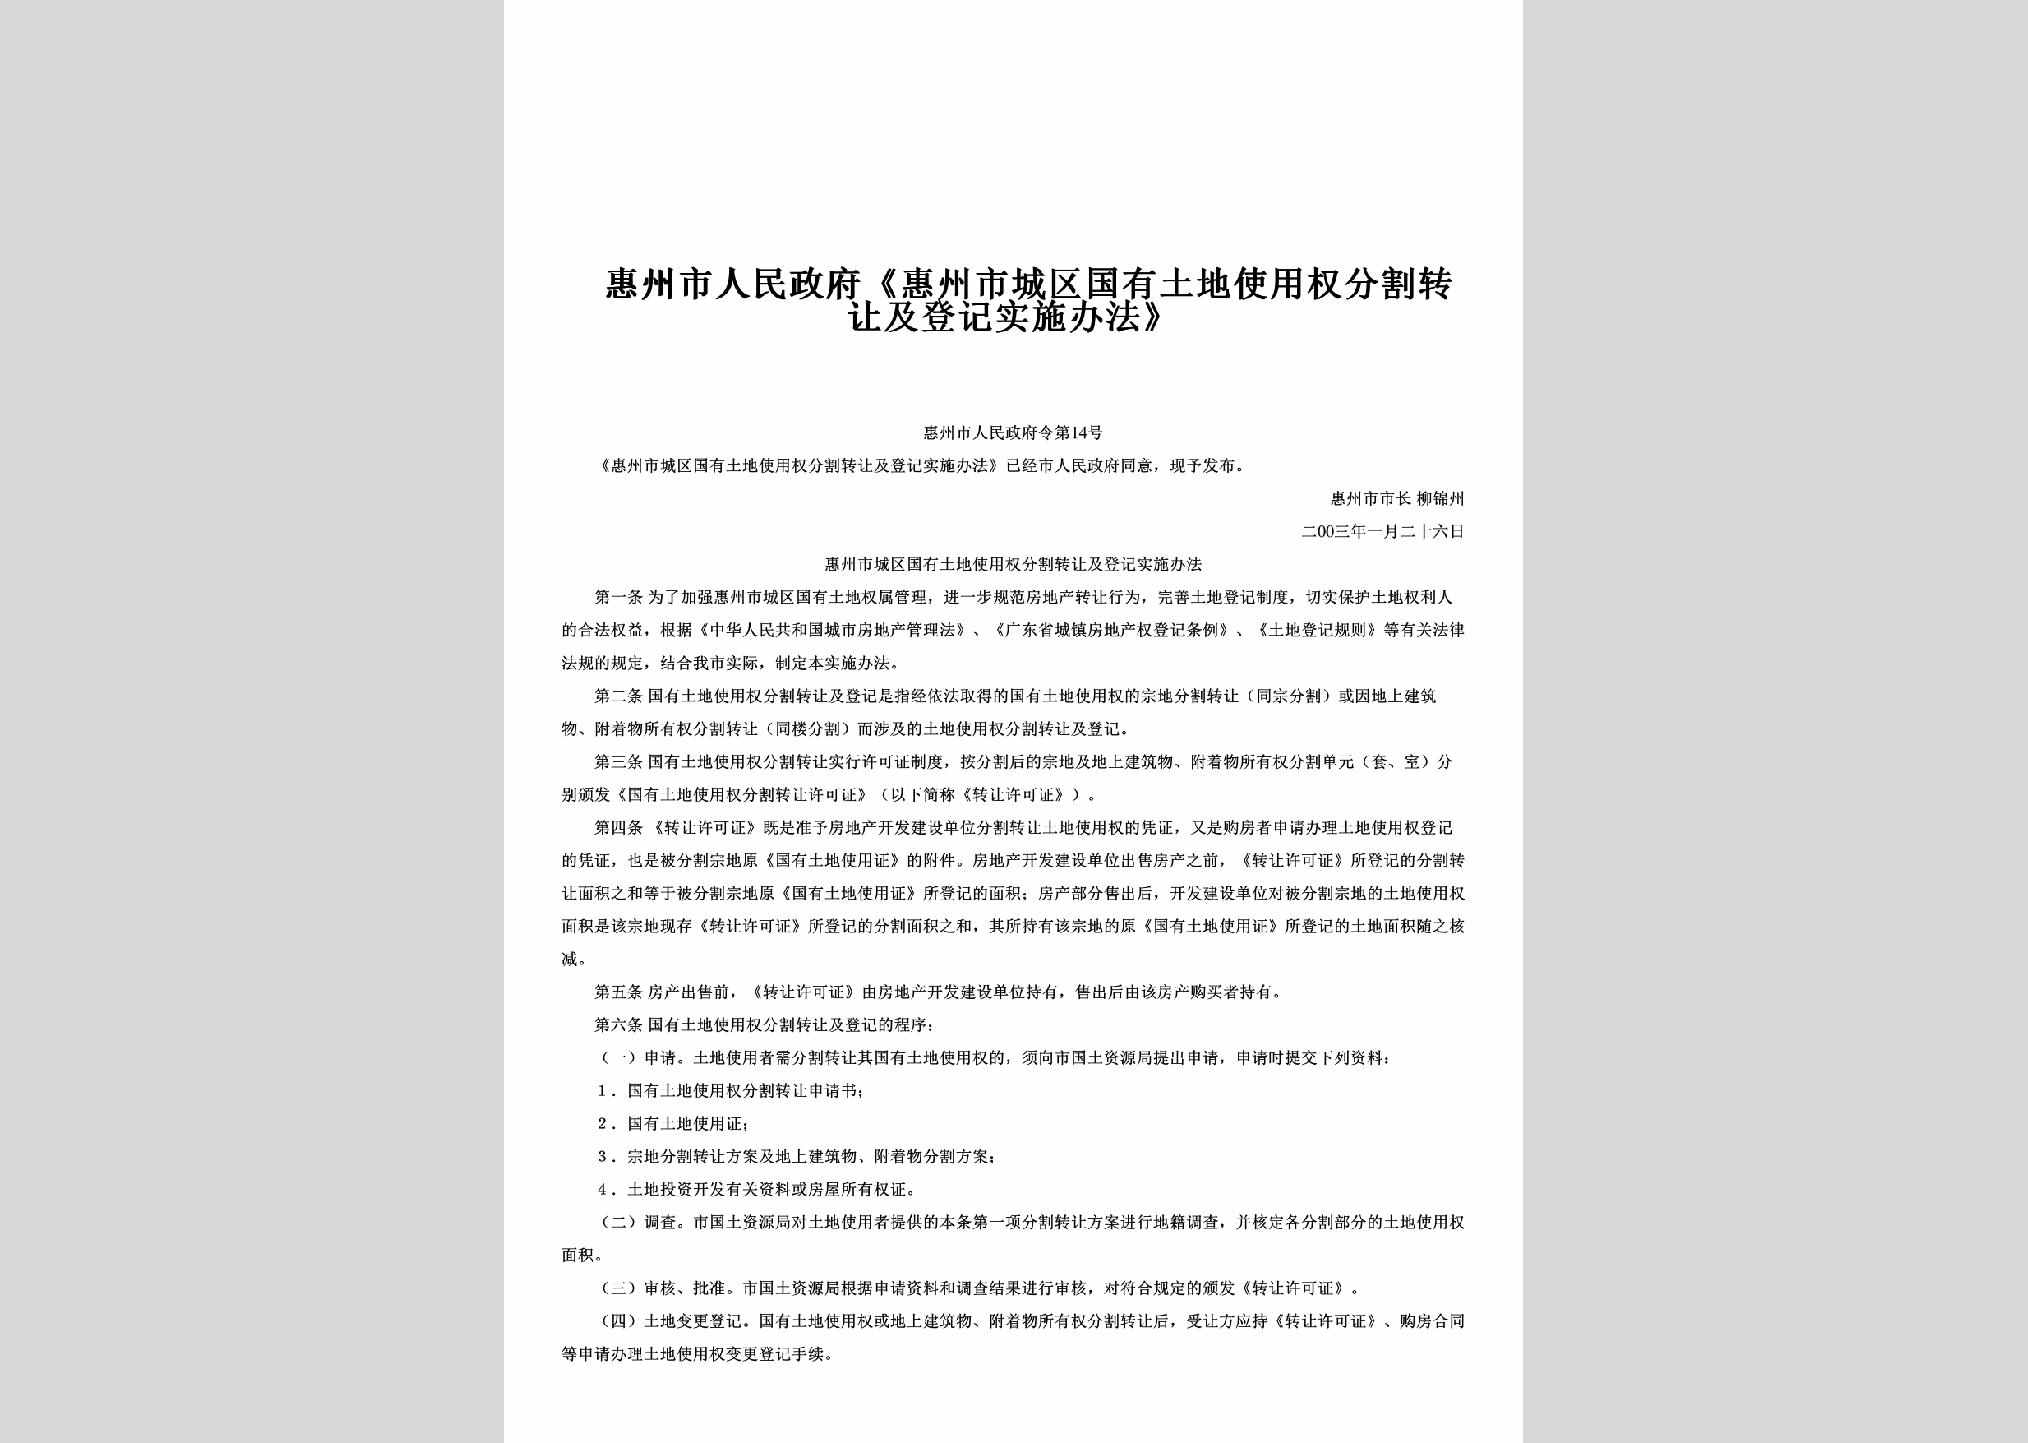 惠州市人民政府令第14号：《惠州市城区国有土地使用权分割转让及登记实施办法》